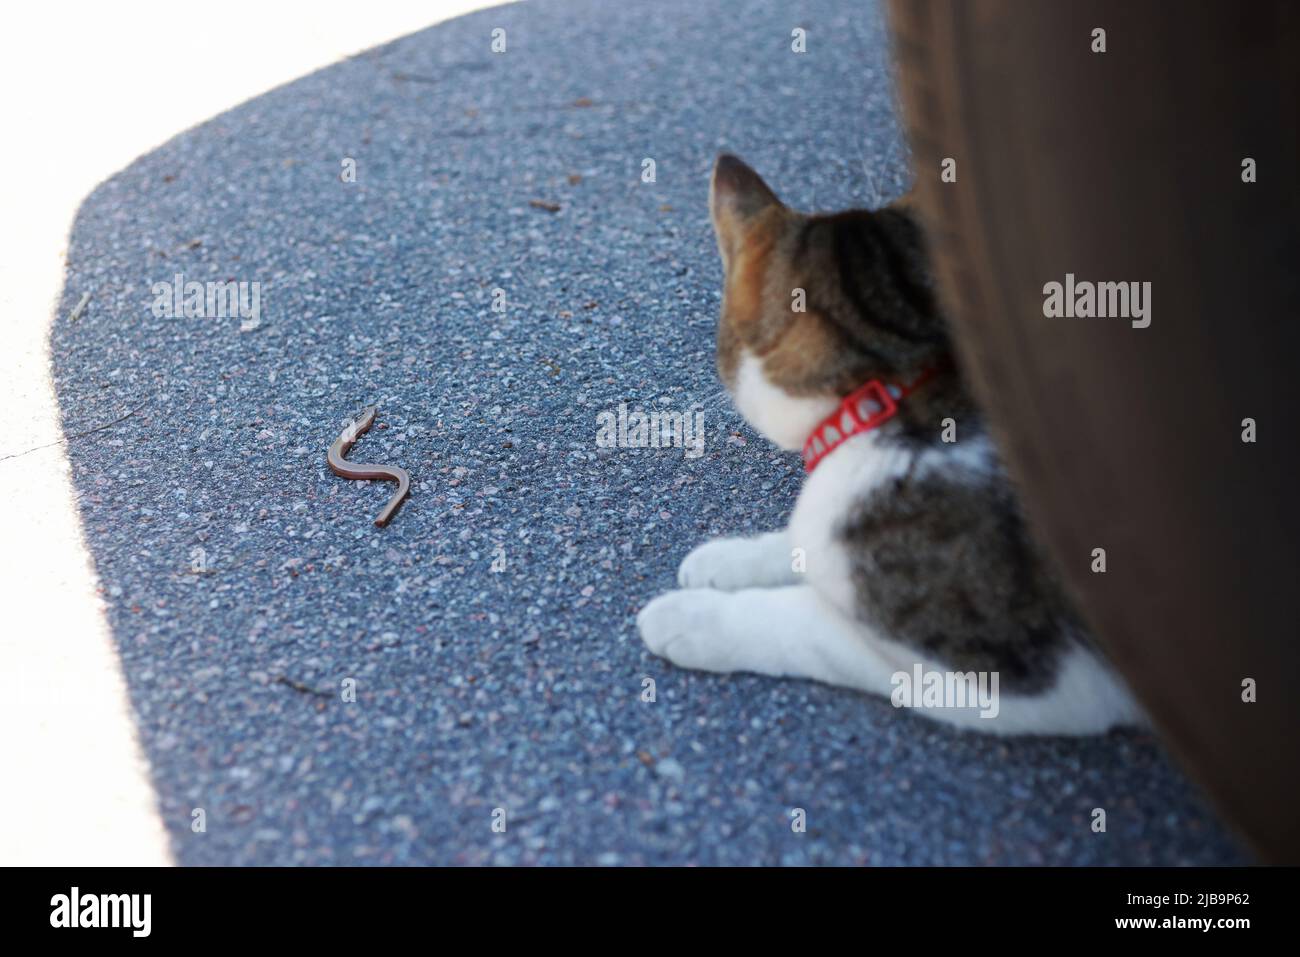 Eine Katze, die am Mittwoch in Motala, Schweden, auf einem Parkplatz einen langsamen Wurm erwischt hat. Schlüpfen Sie wie ein Aal, der langsame Wurm schleicht sich nach einem kurzen Kampf in den Wald. (CAT)hehe dachte an die Katze und bewegte sich zu neuen Jagdzielen. Stockfoto